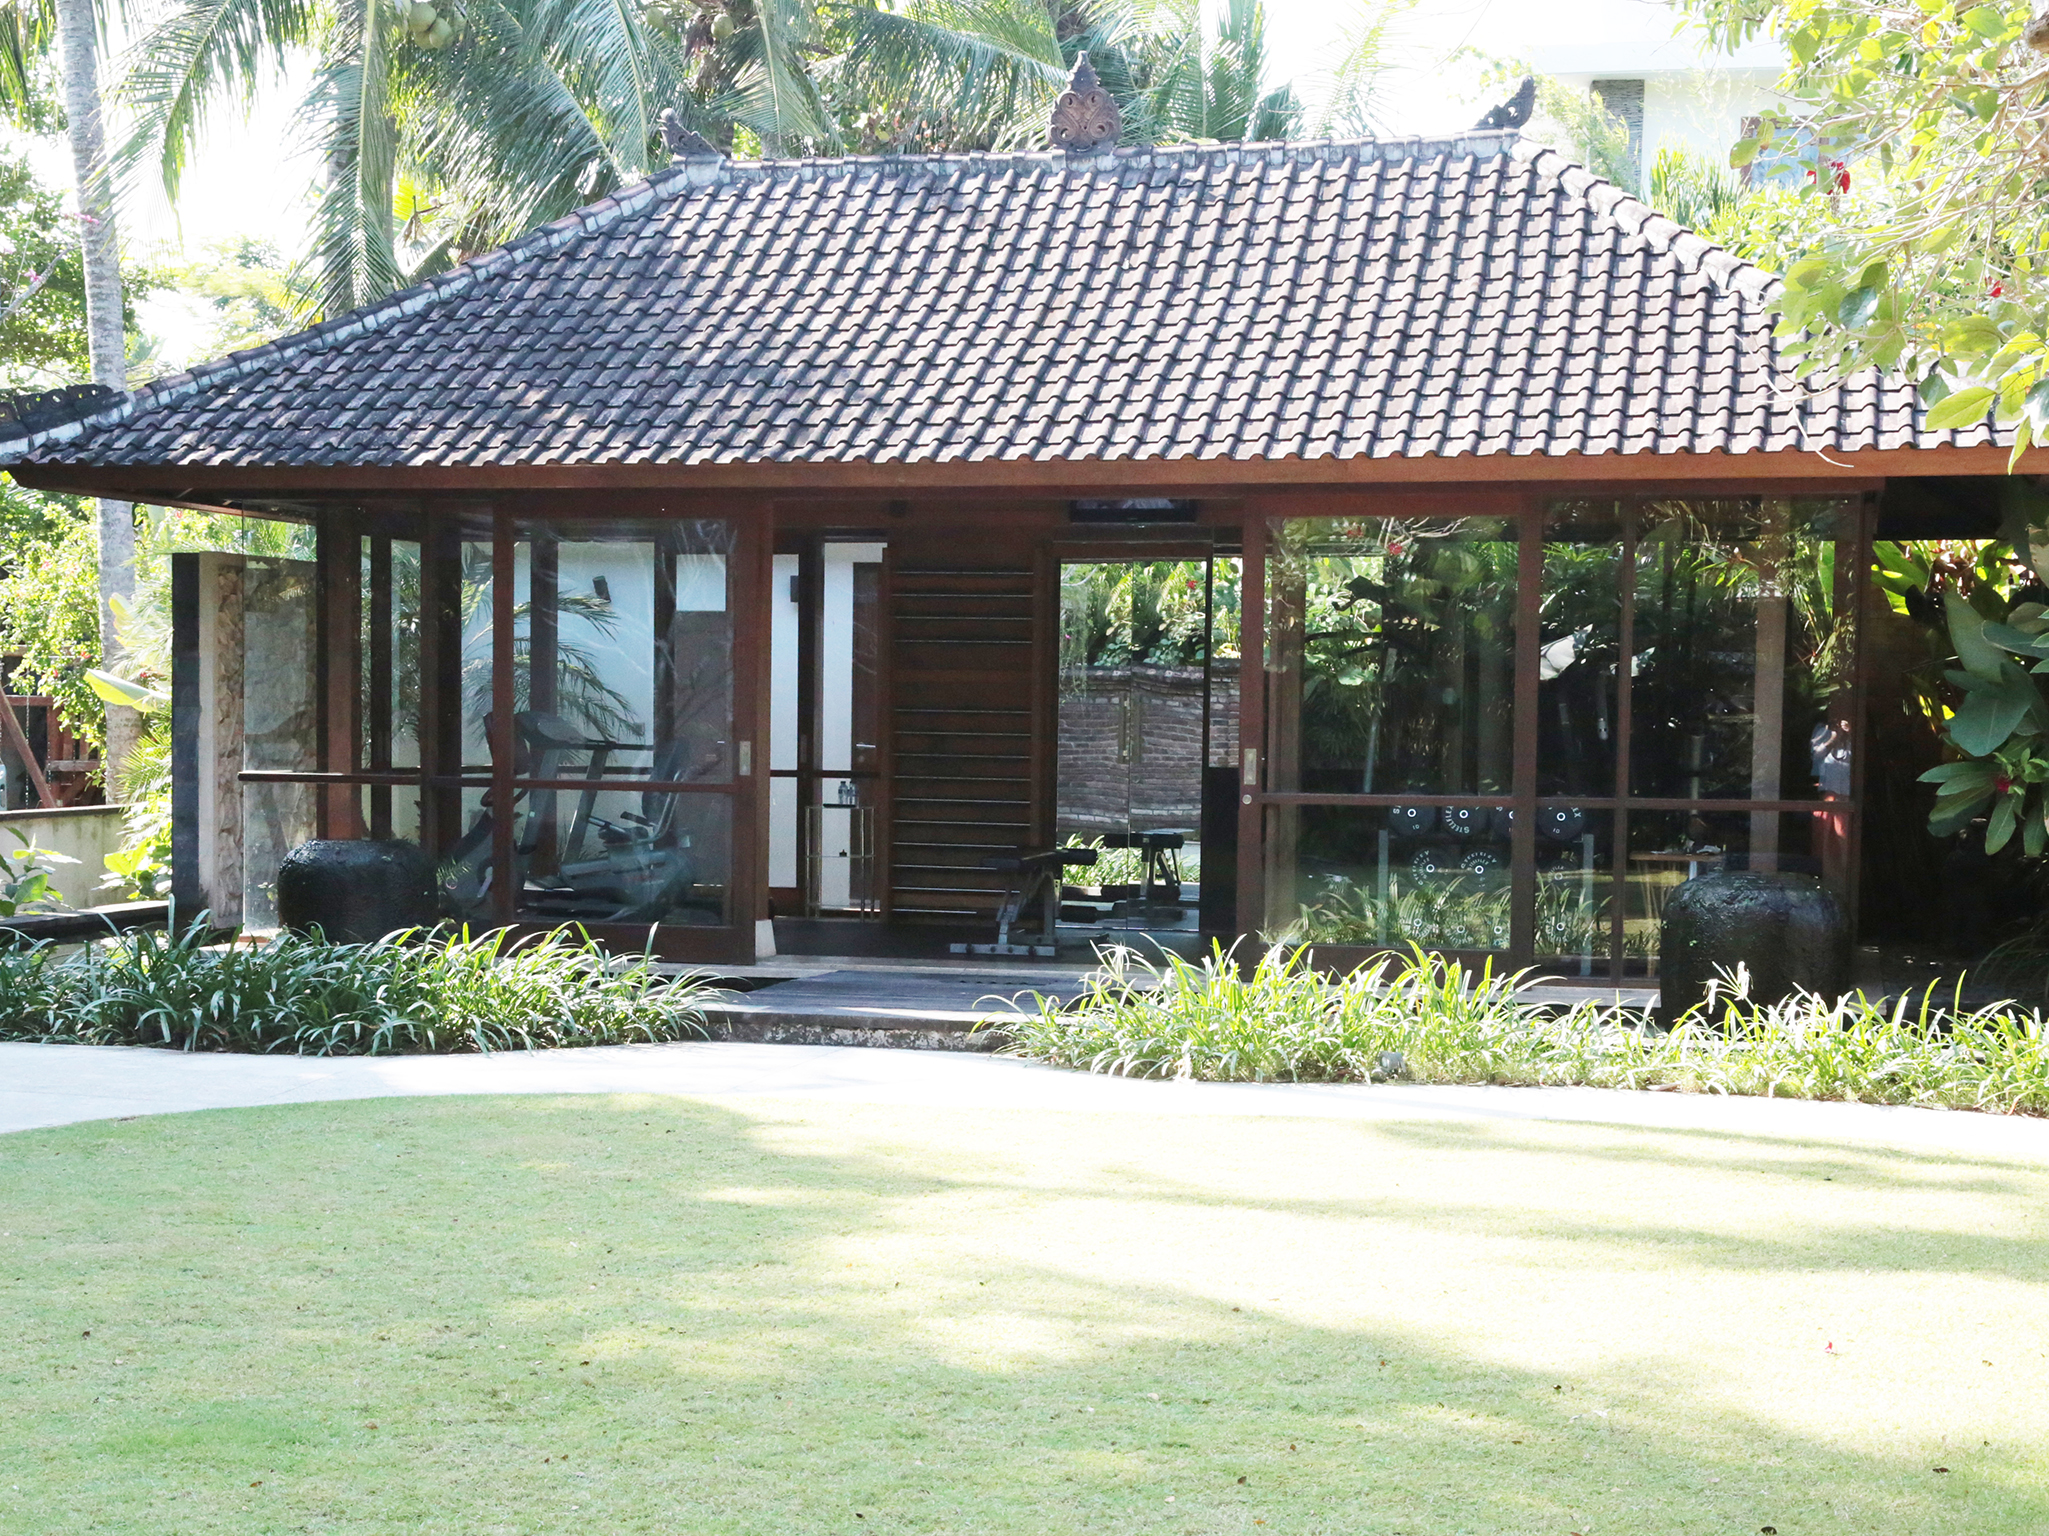 Dea Villas - Gym and lawn - Dea Villas - Villa Radha, Canggu, Bali